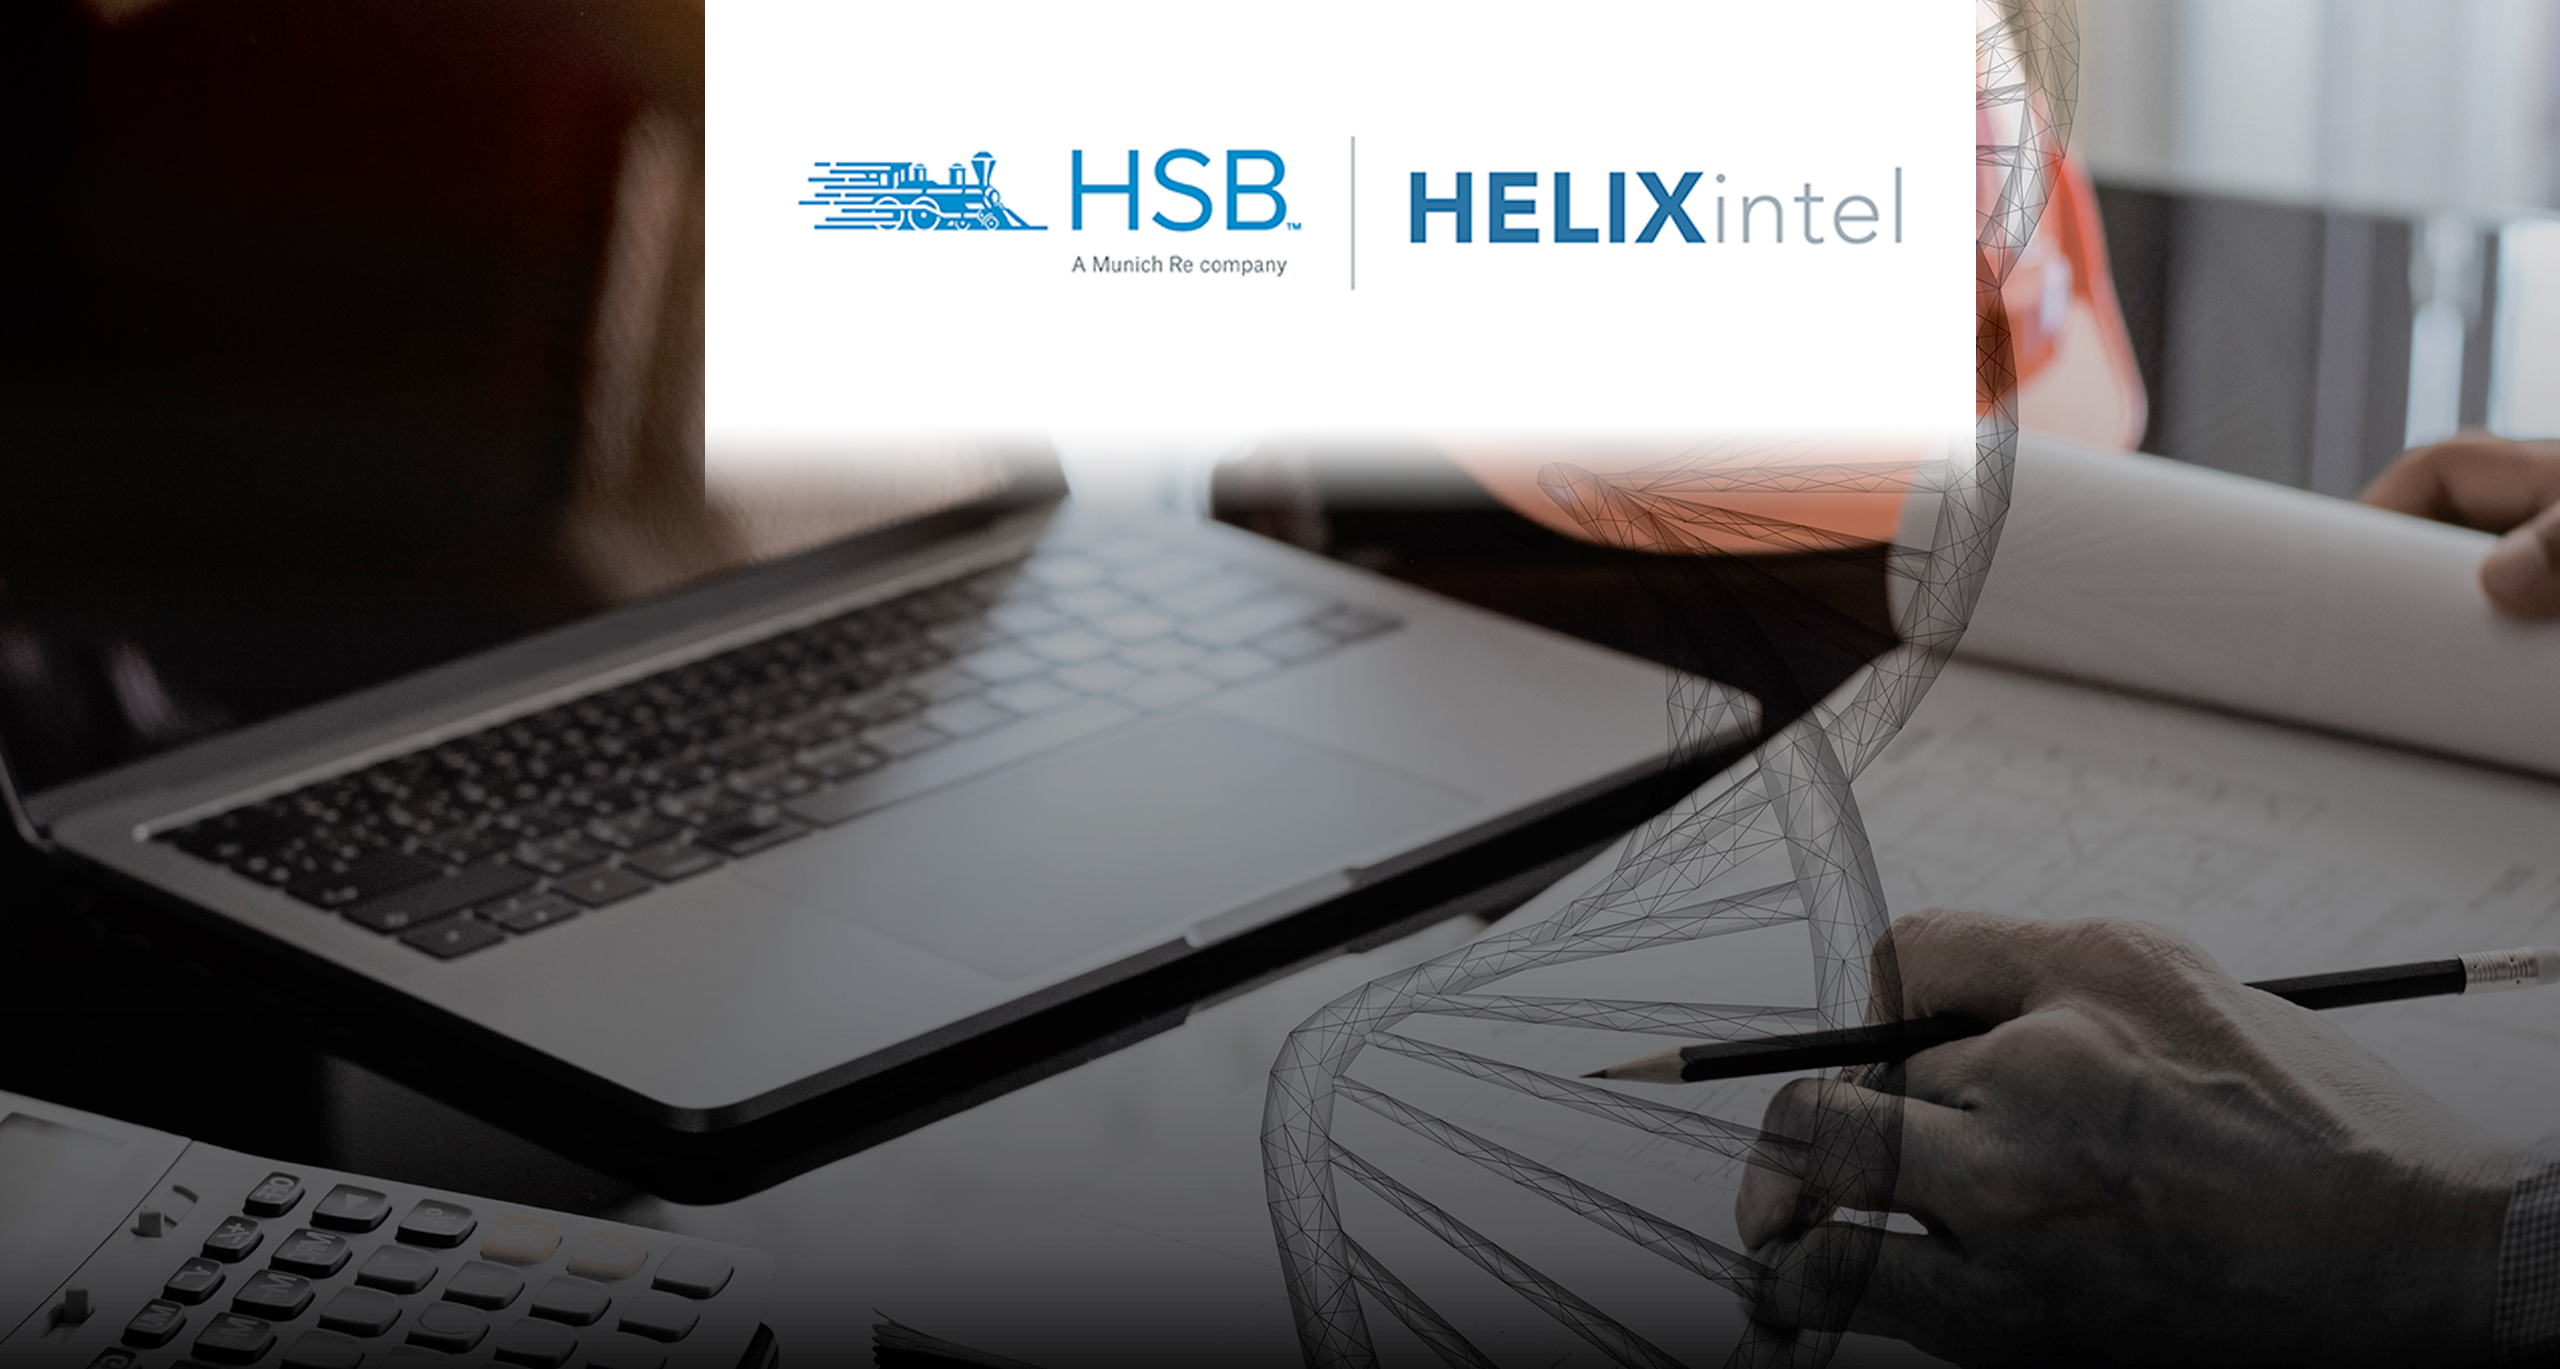 HSB | HELIXintel